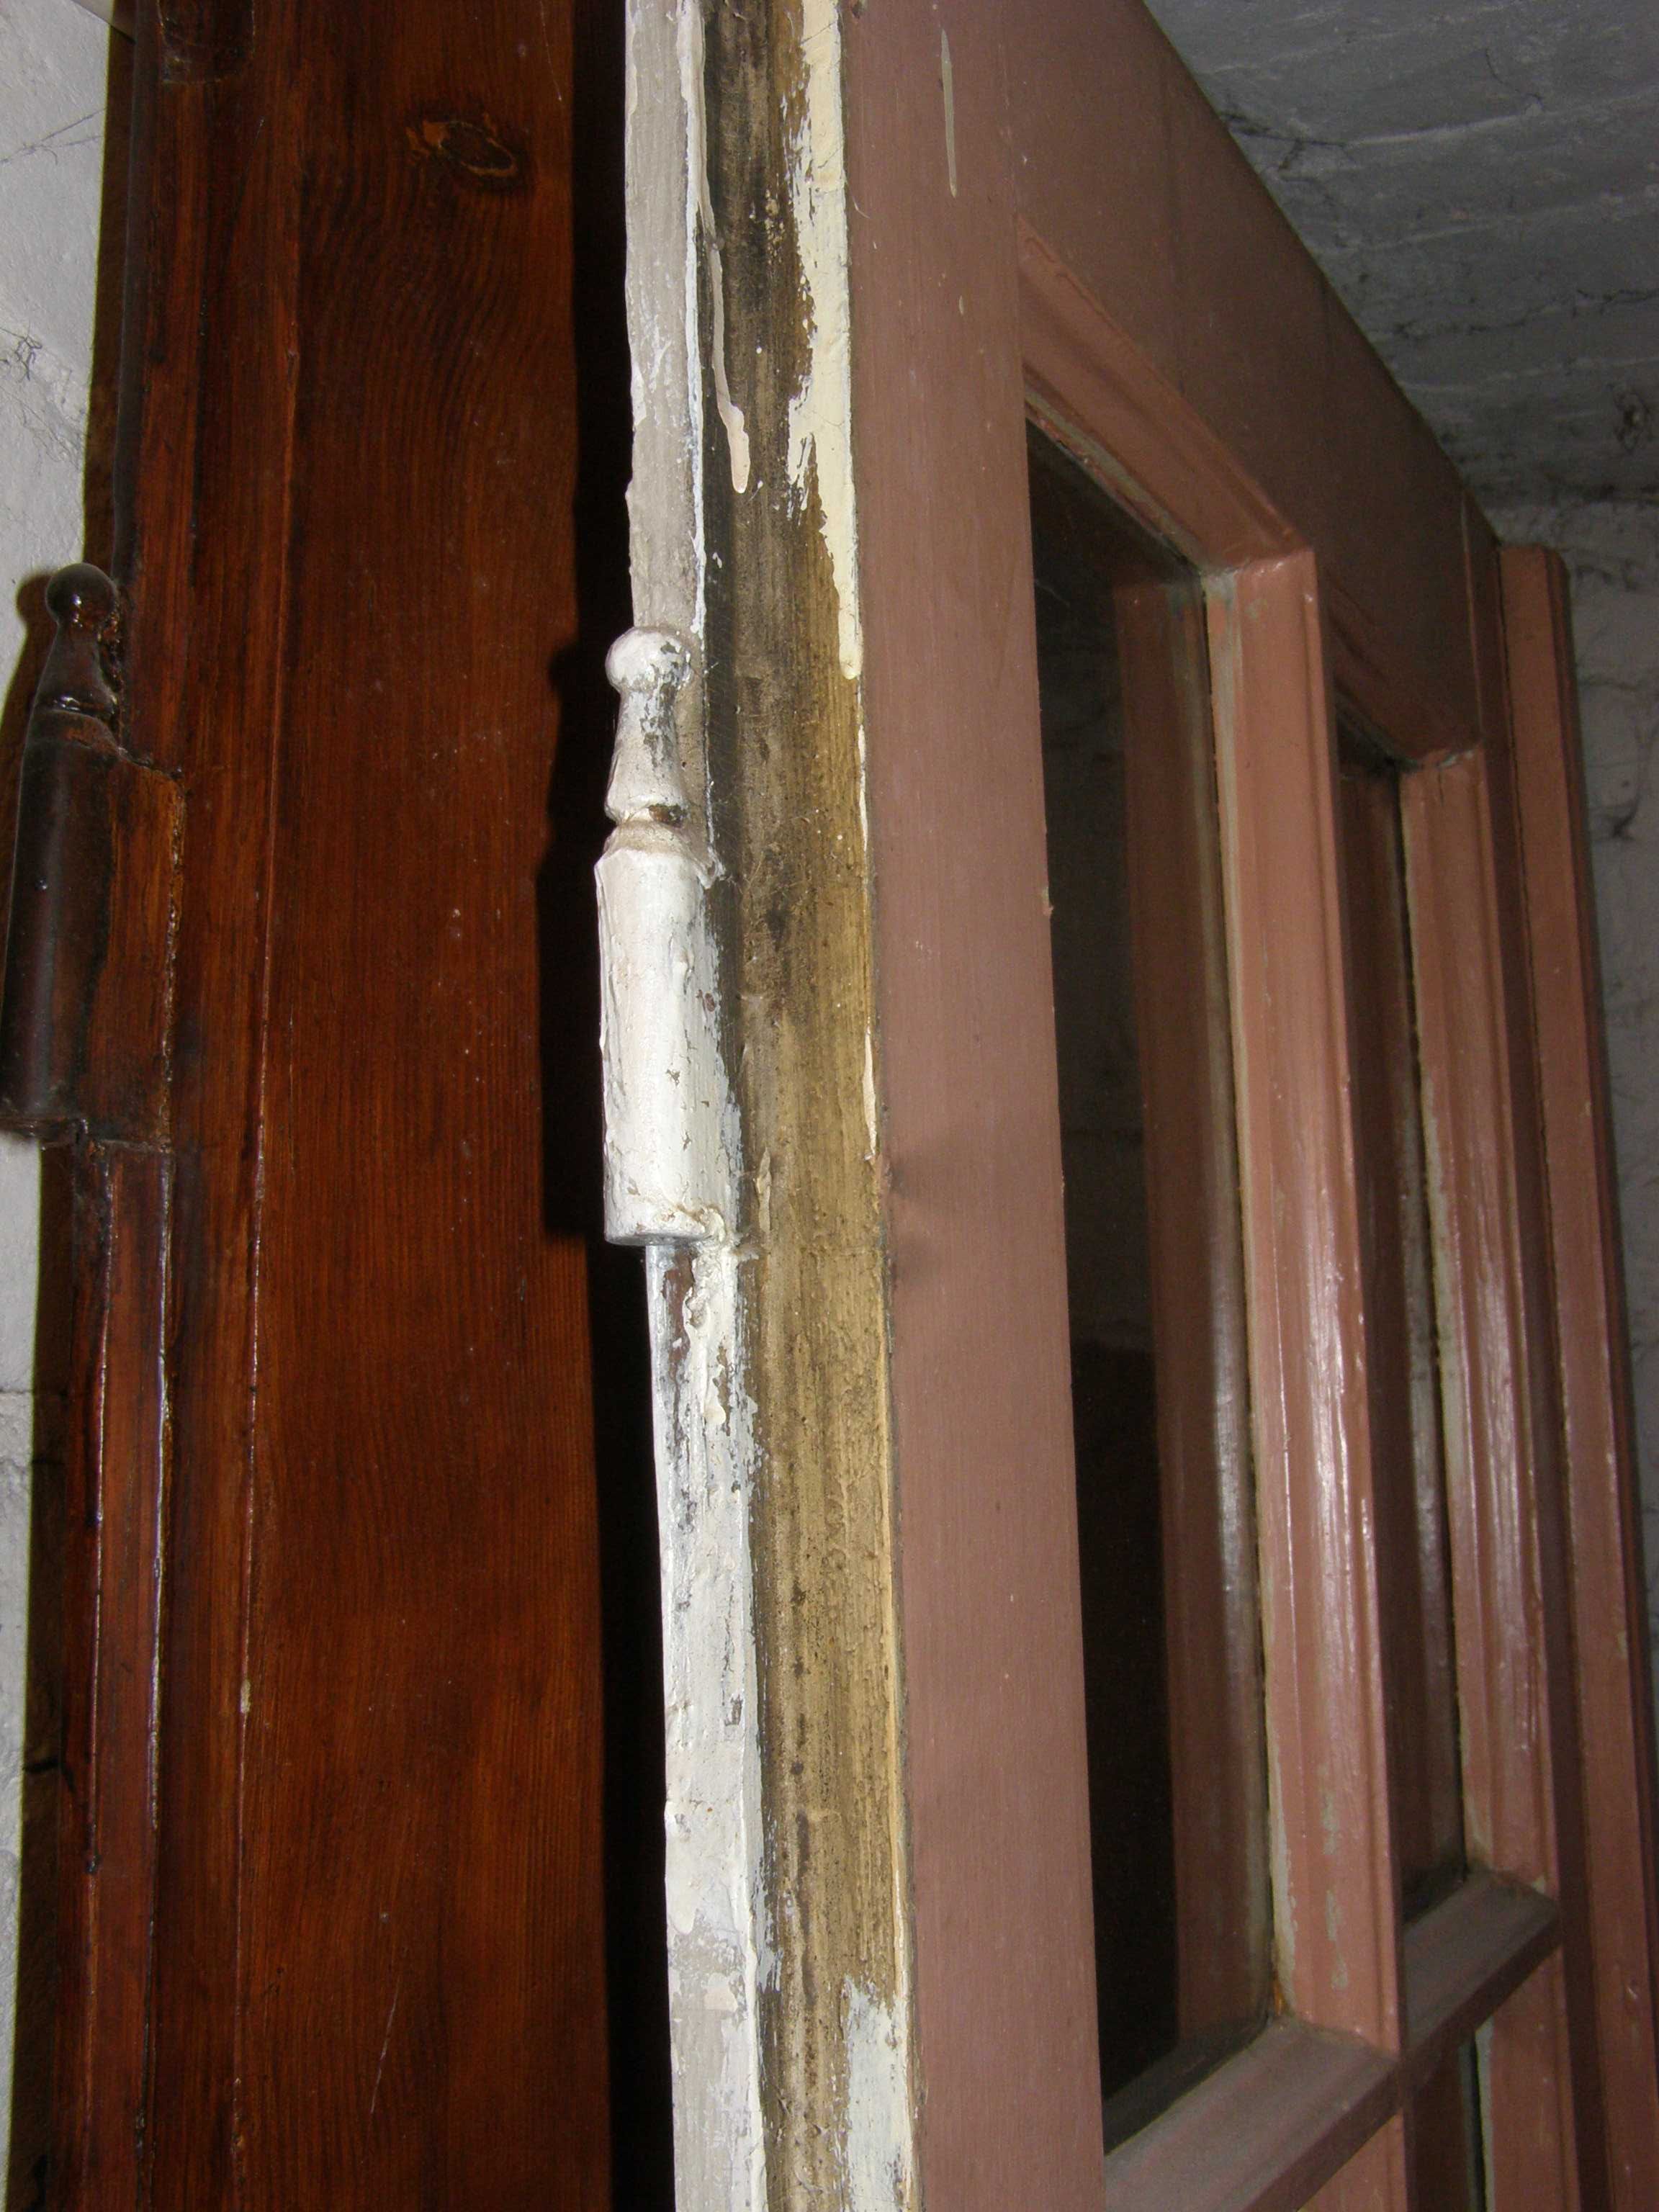 межкомнатные двери ( дверные полотна) цельного дерева со стёклами